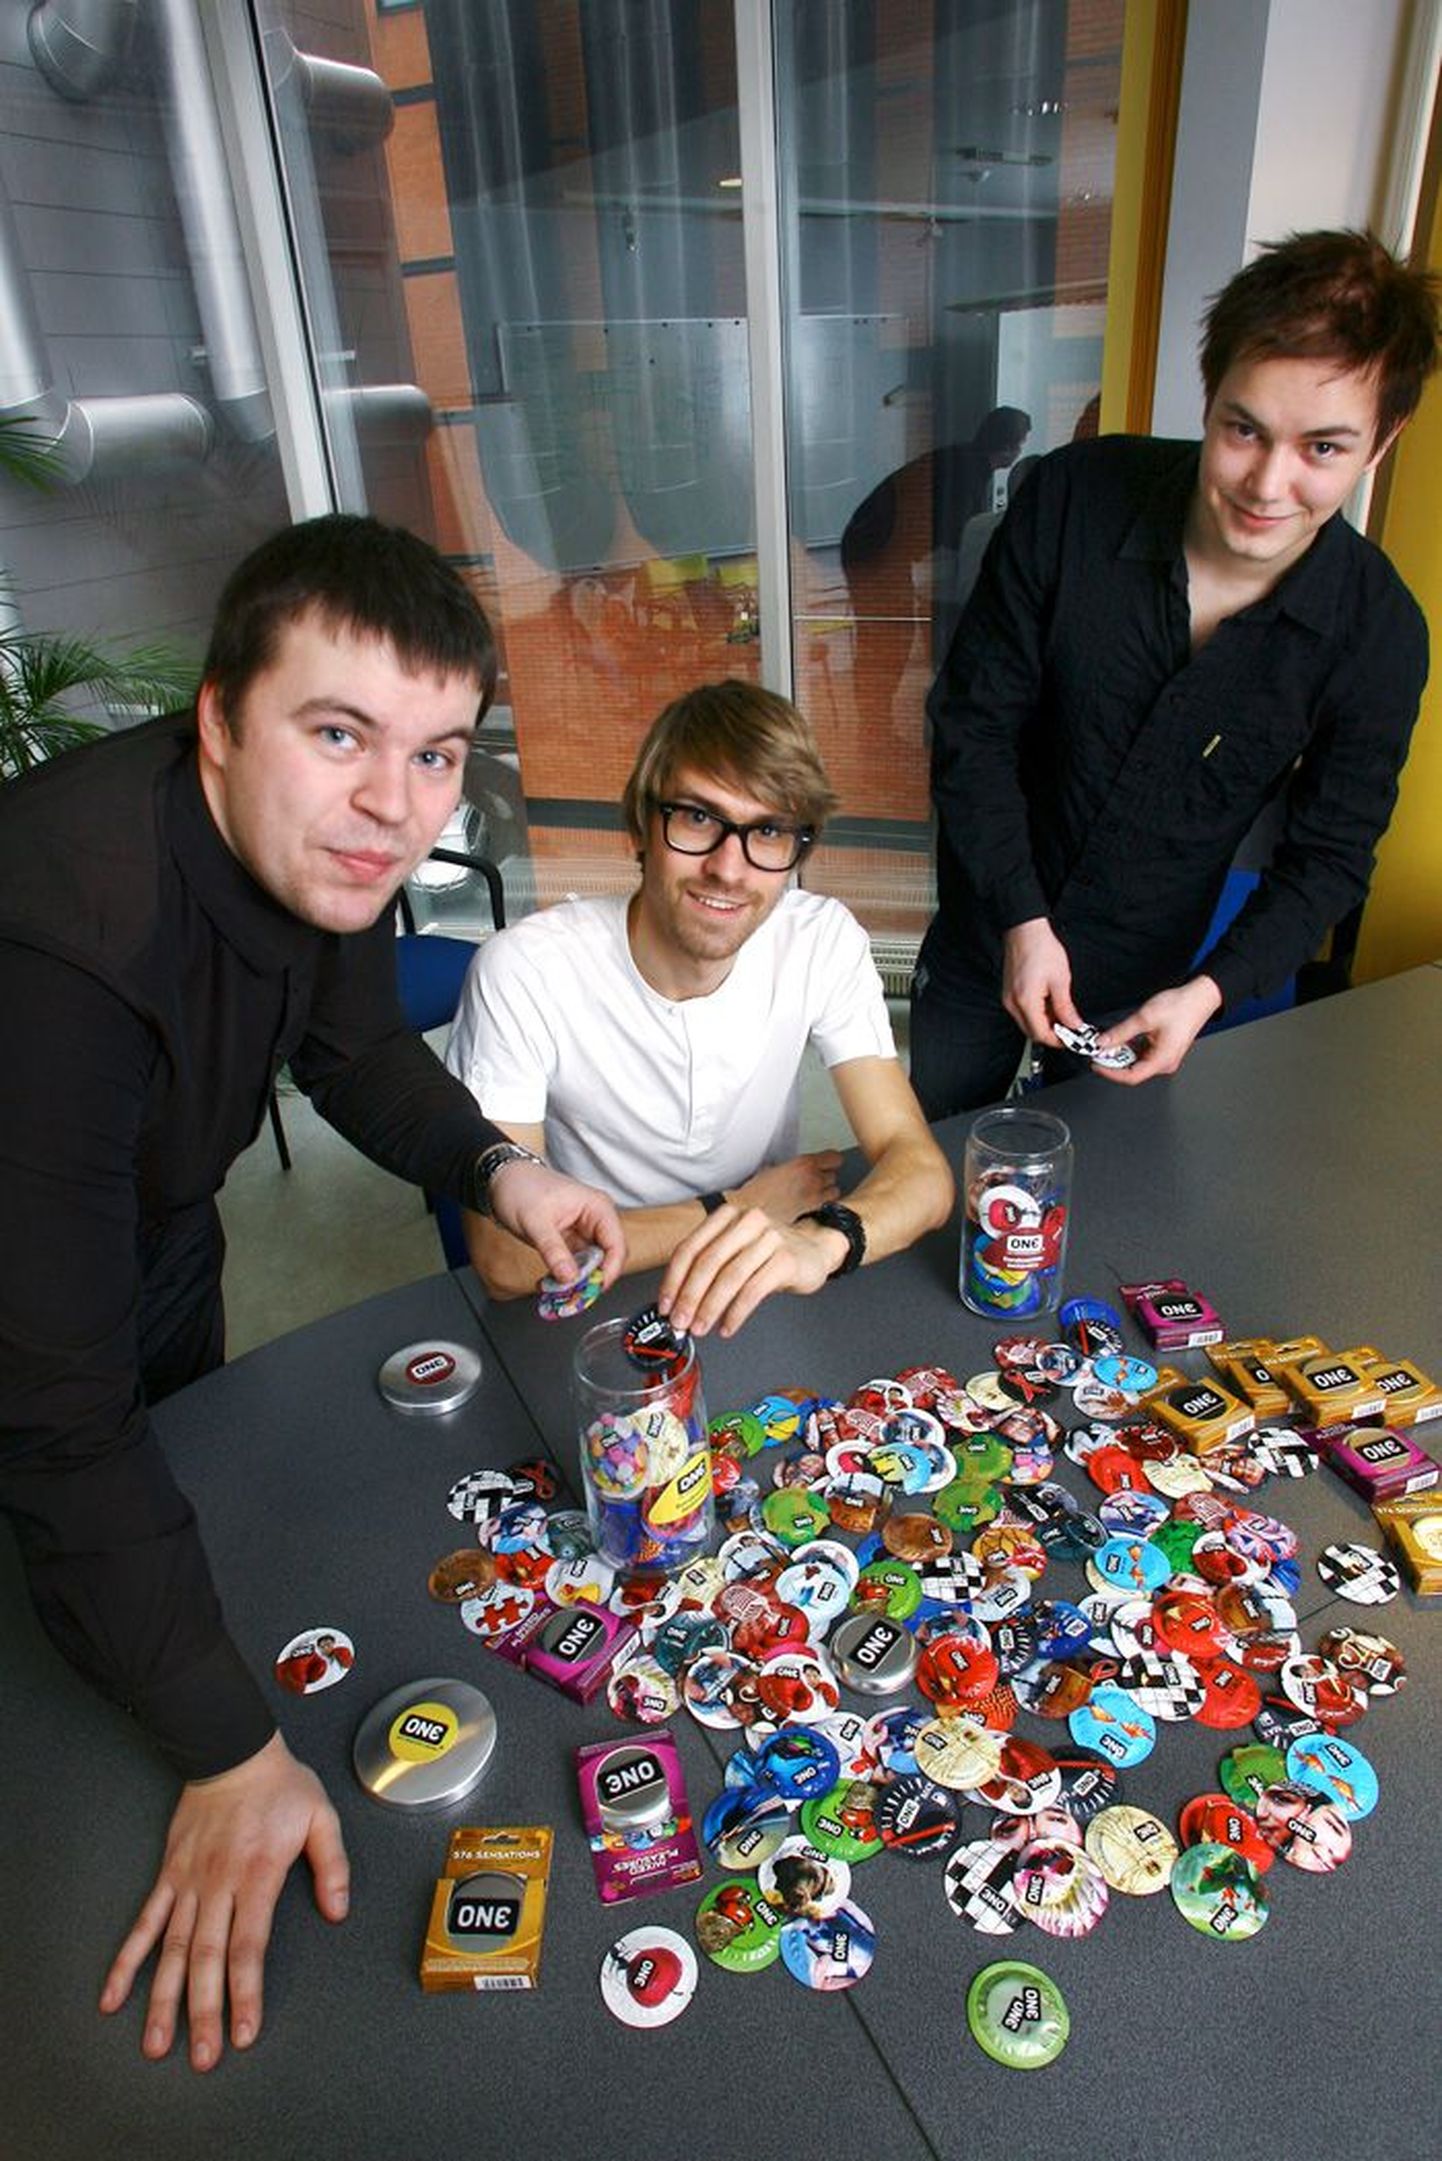 Firma Vincent Holding töötajad (vasakult) Rainer Eiland, Artur Sadovski ja Peedu Tuisk loodavad lõbusas pakendis kondoomidega võita noorte poolehoiu ja vallutada kolmandiku Eesti kondoomiärist.